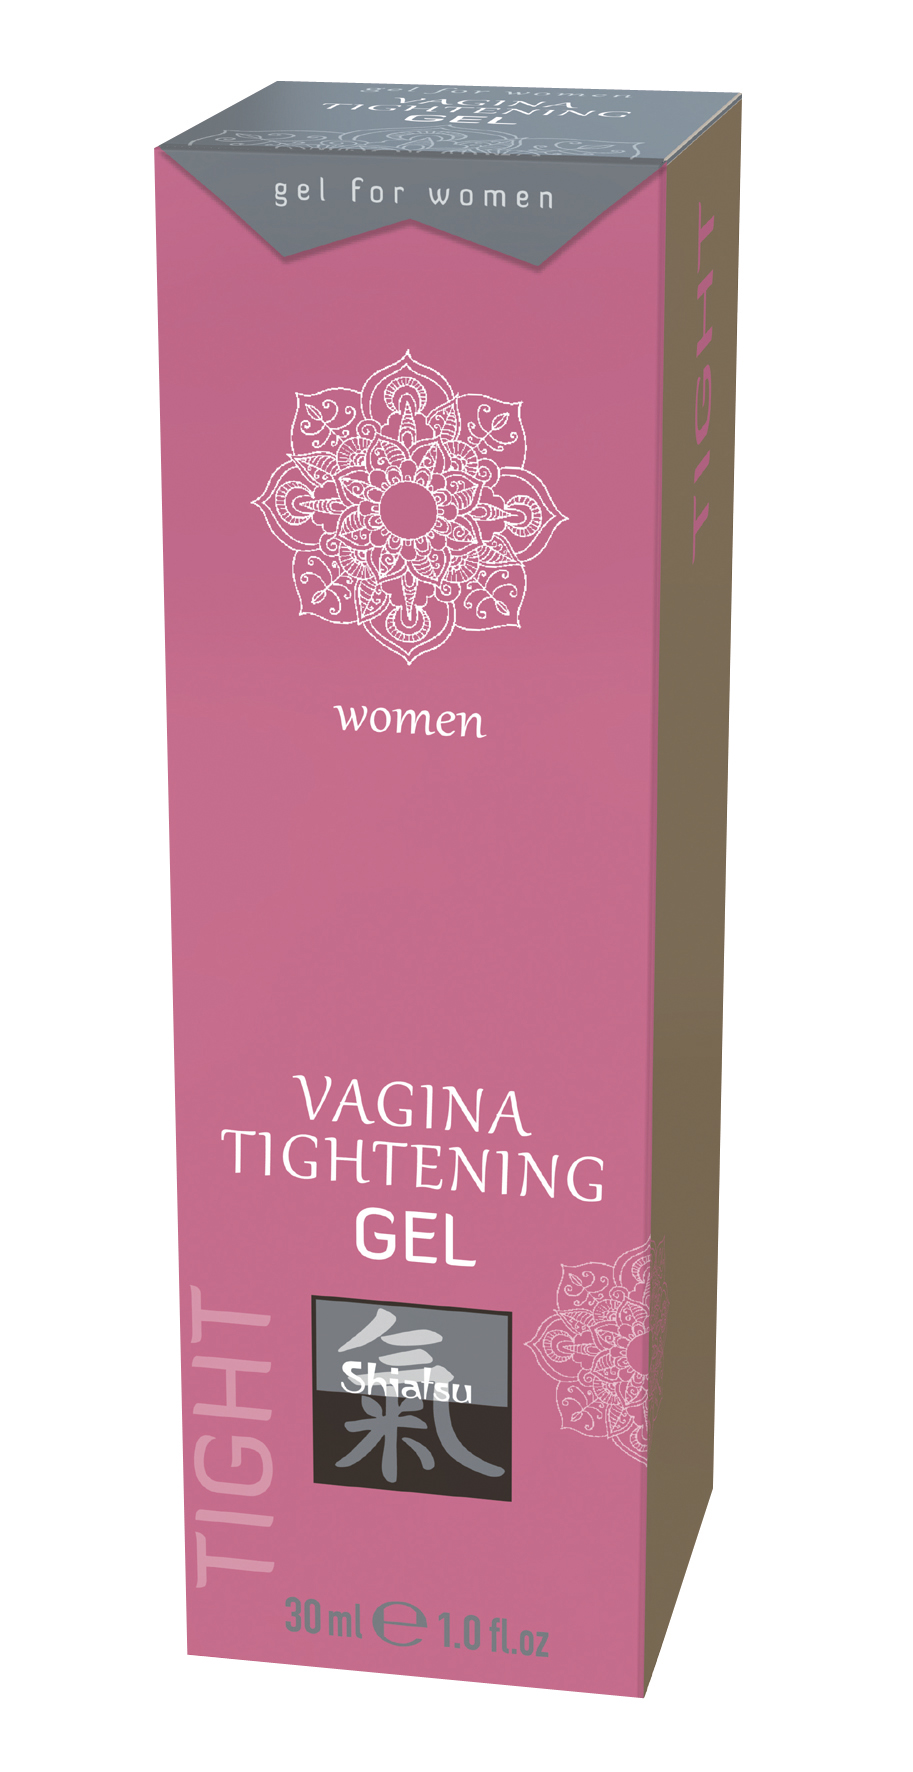 SHIATSU Vagina tightening gel 30ml